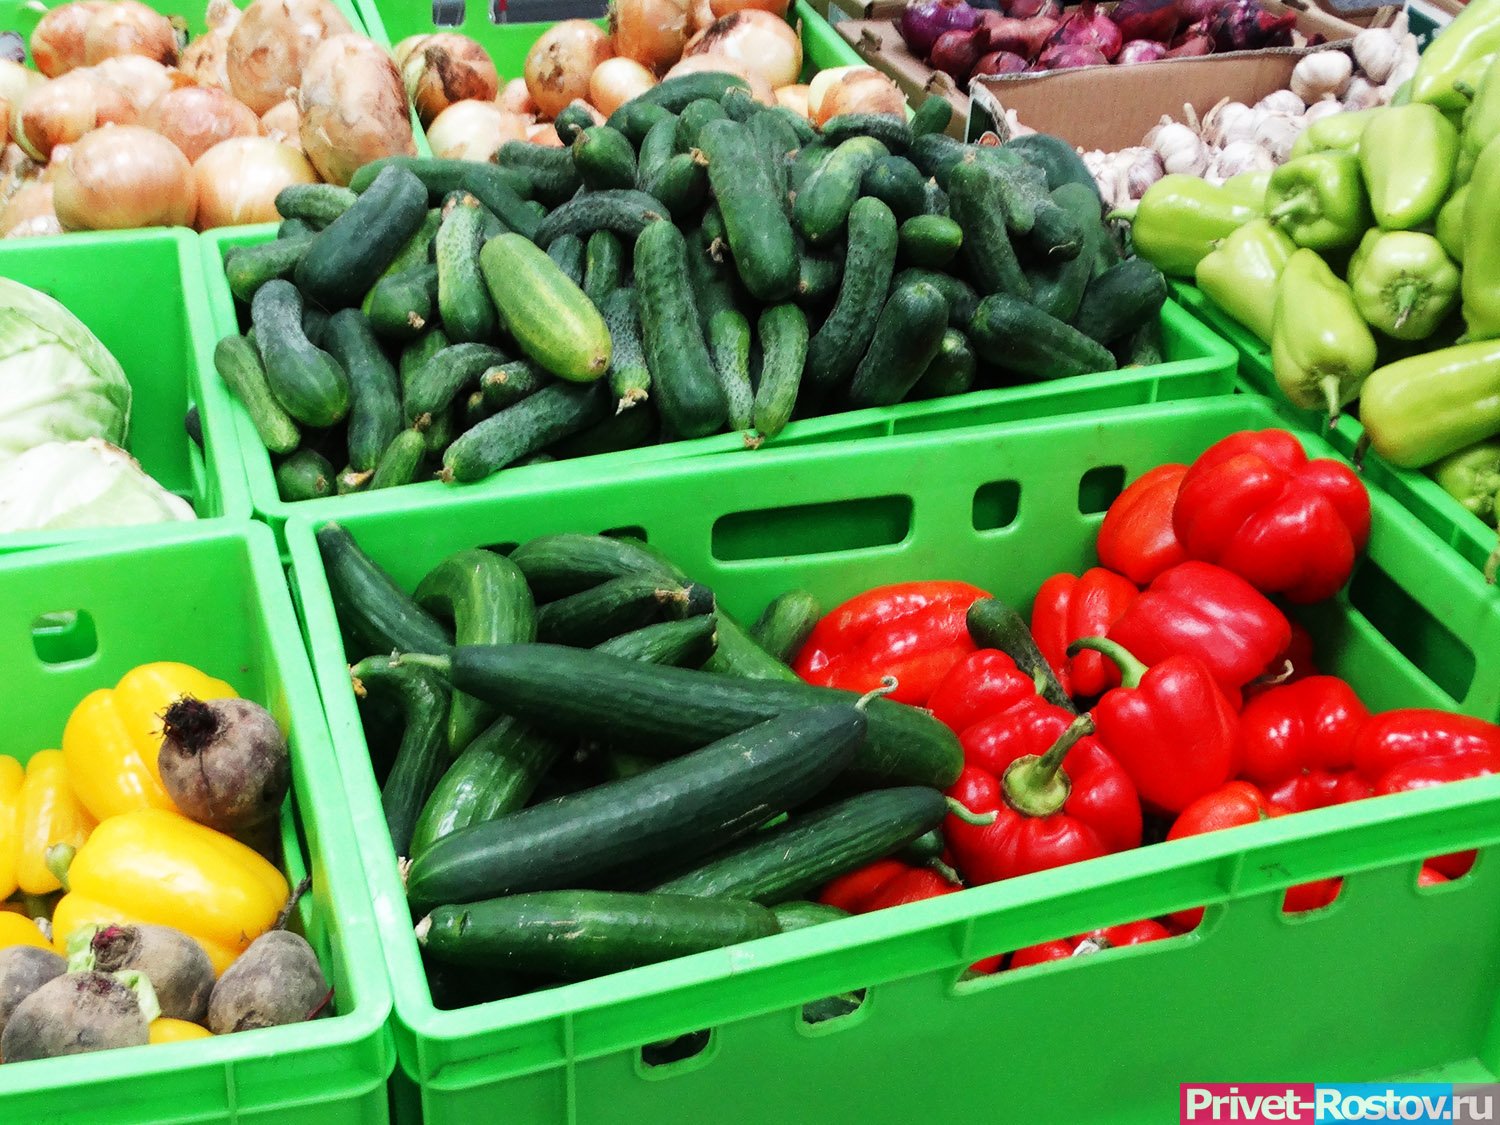 Купить овощи ростов. Торговля оптовая фруктами и овощами. Овощи Ростовской области. Торговля овощами. Ярмарка овощей.